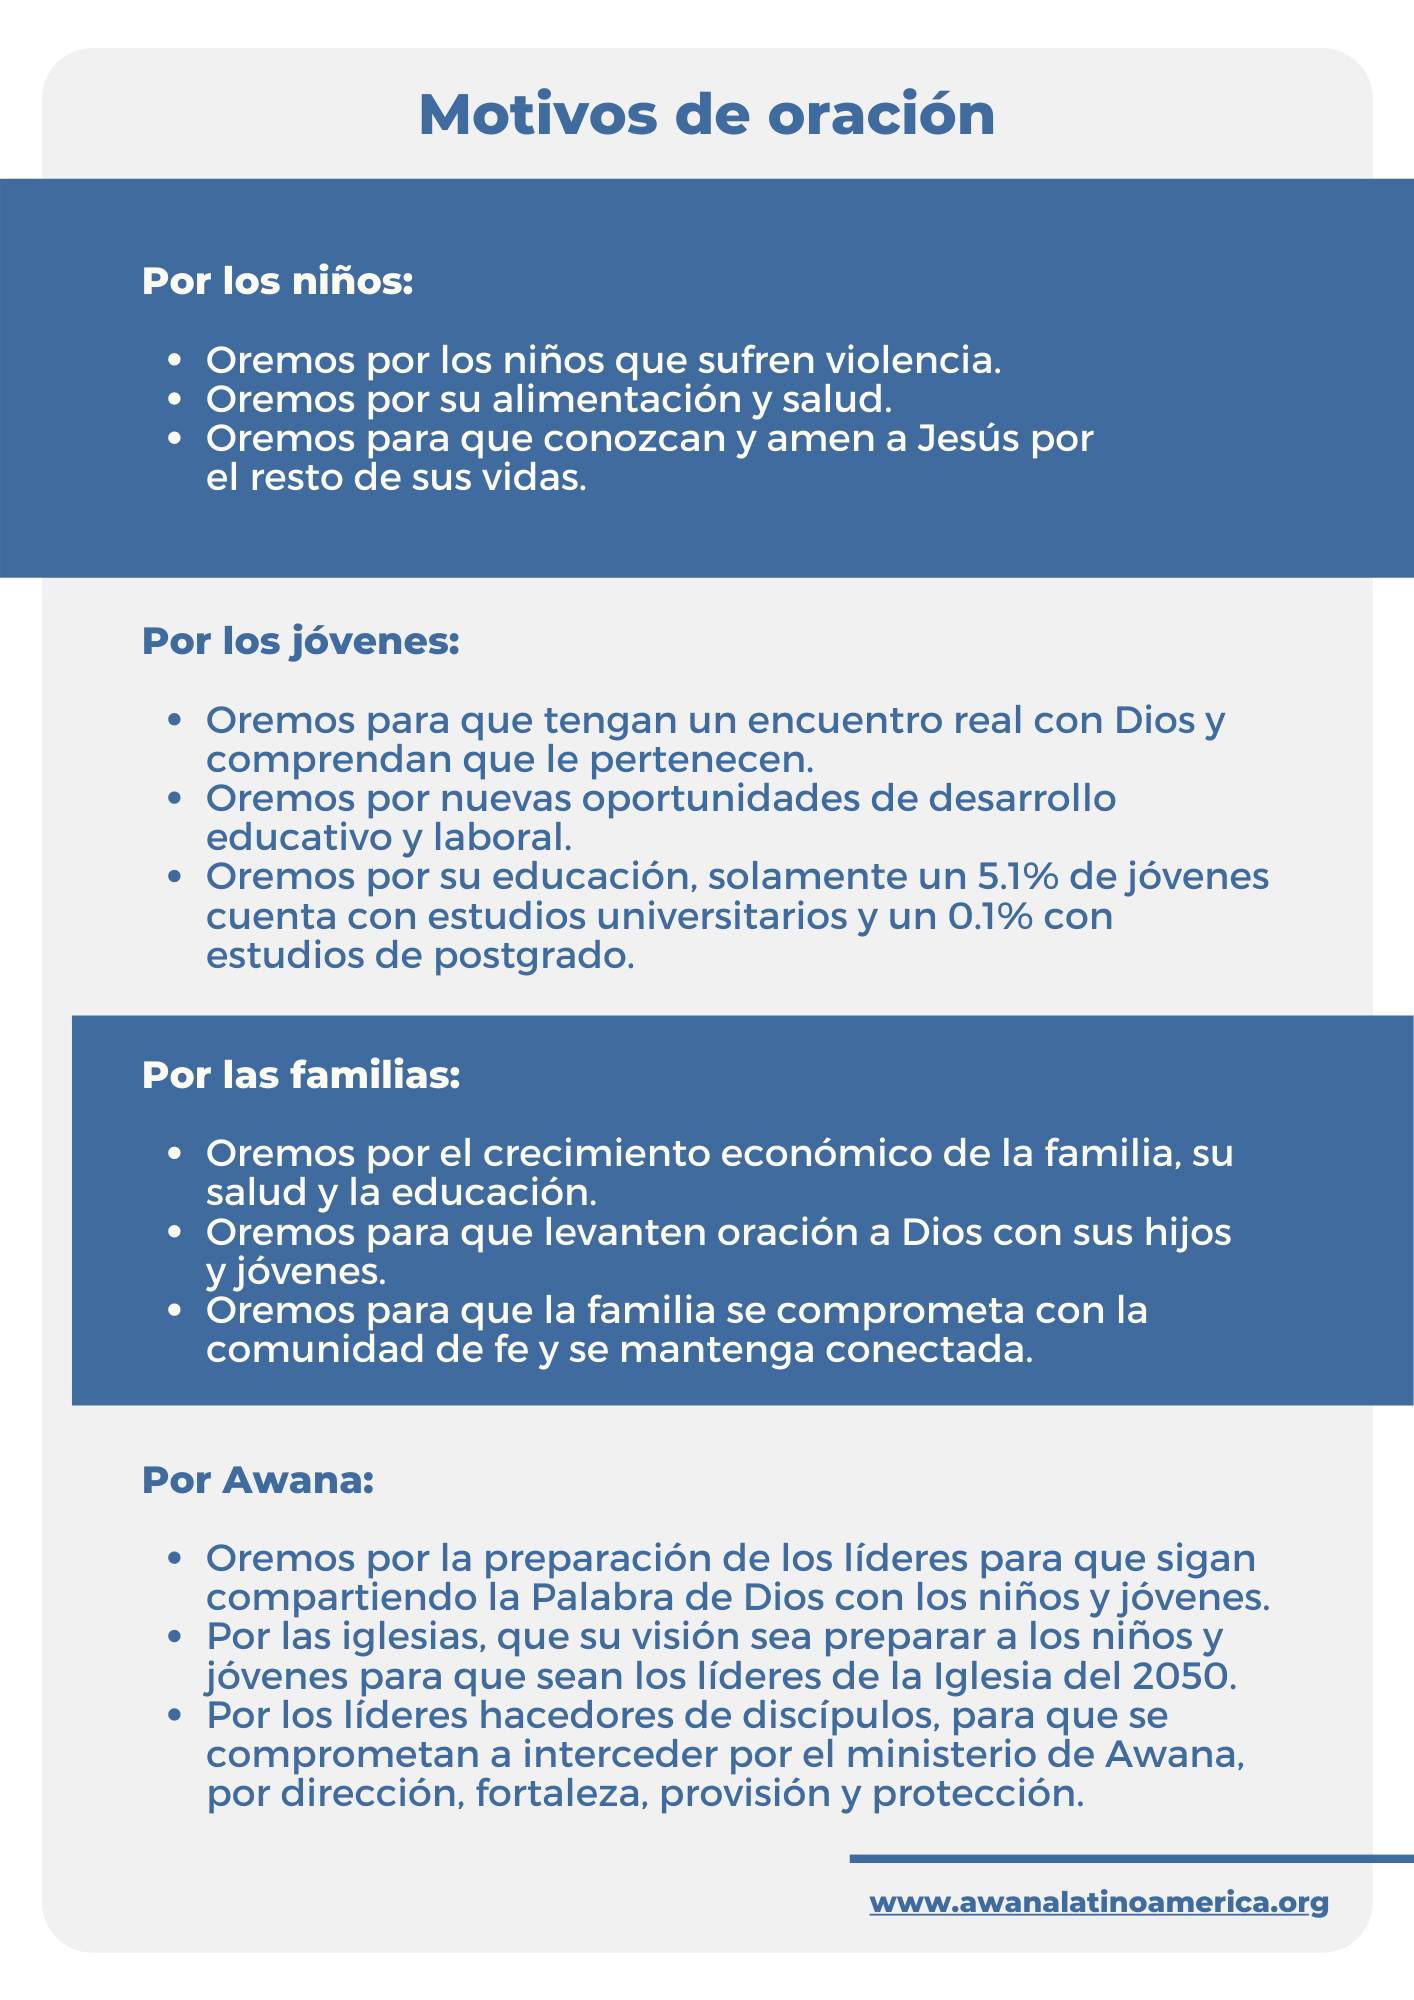 Guía de oracion 2 guatemala.png